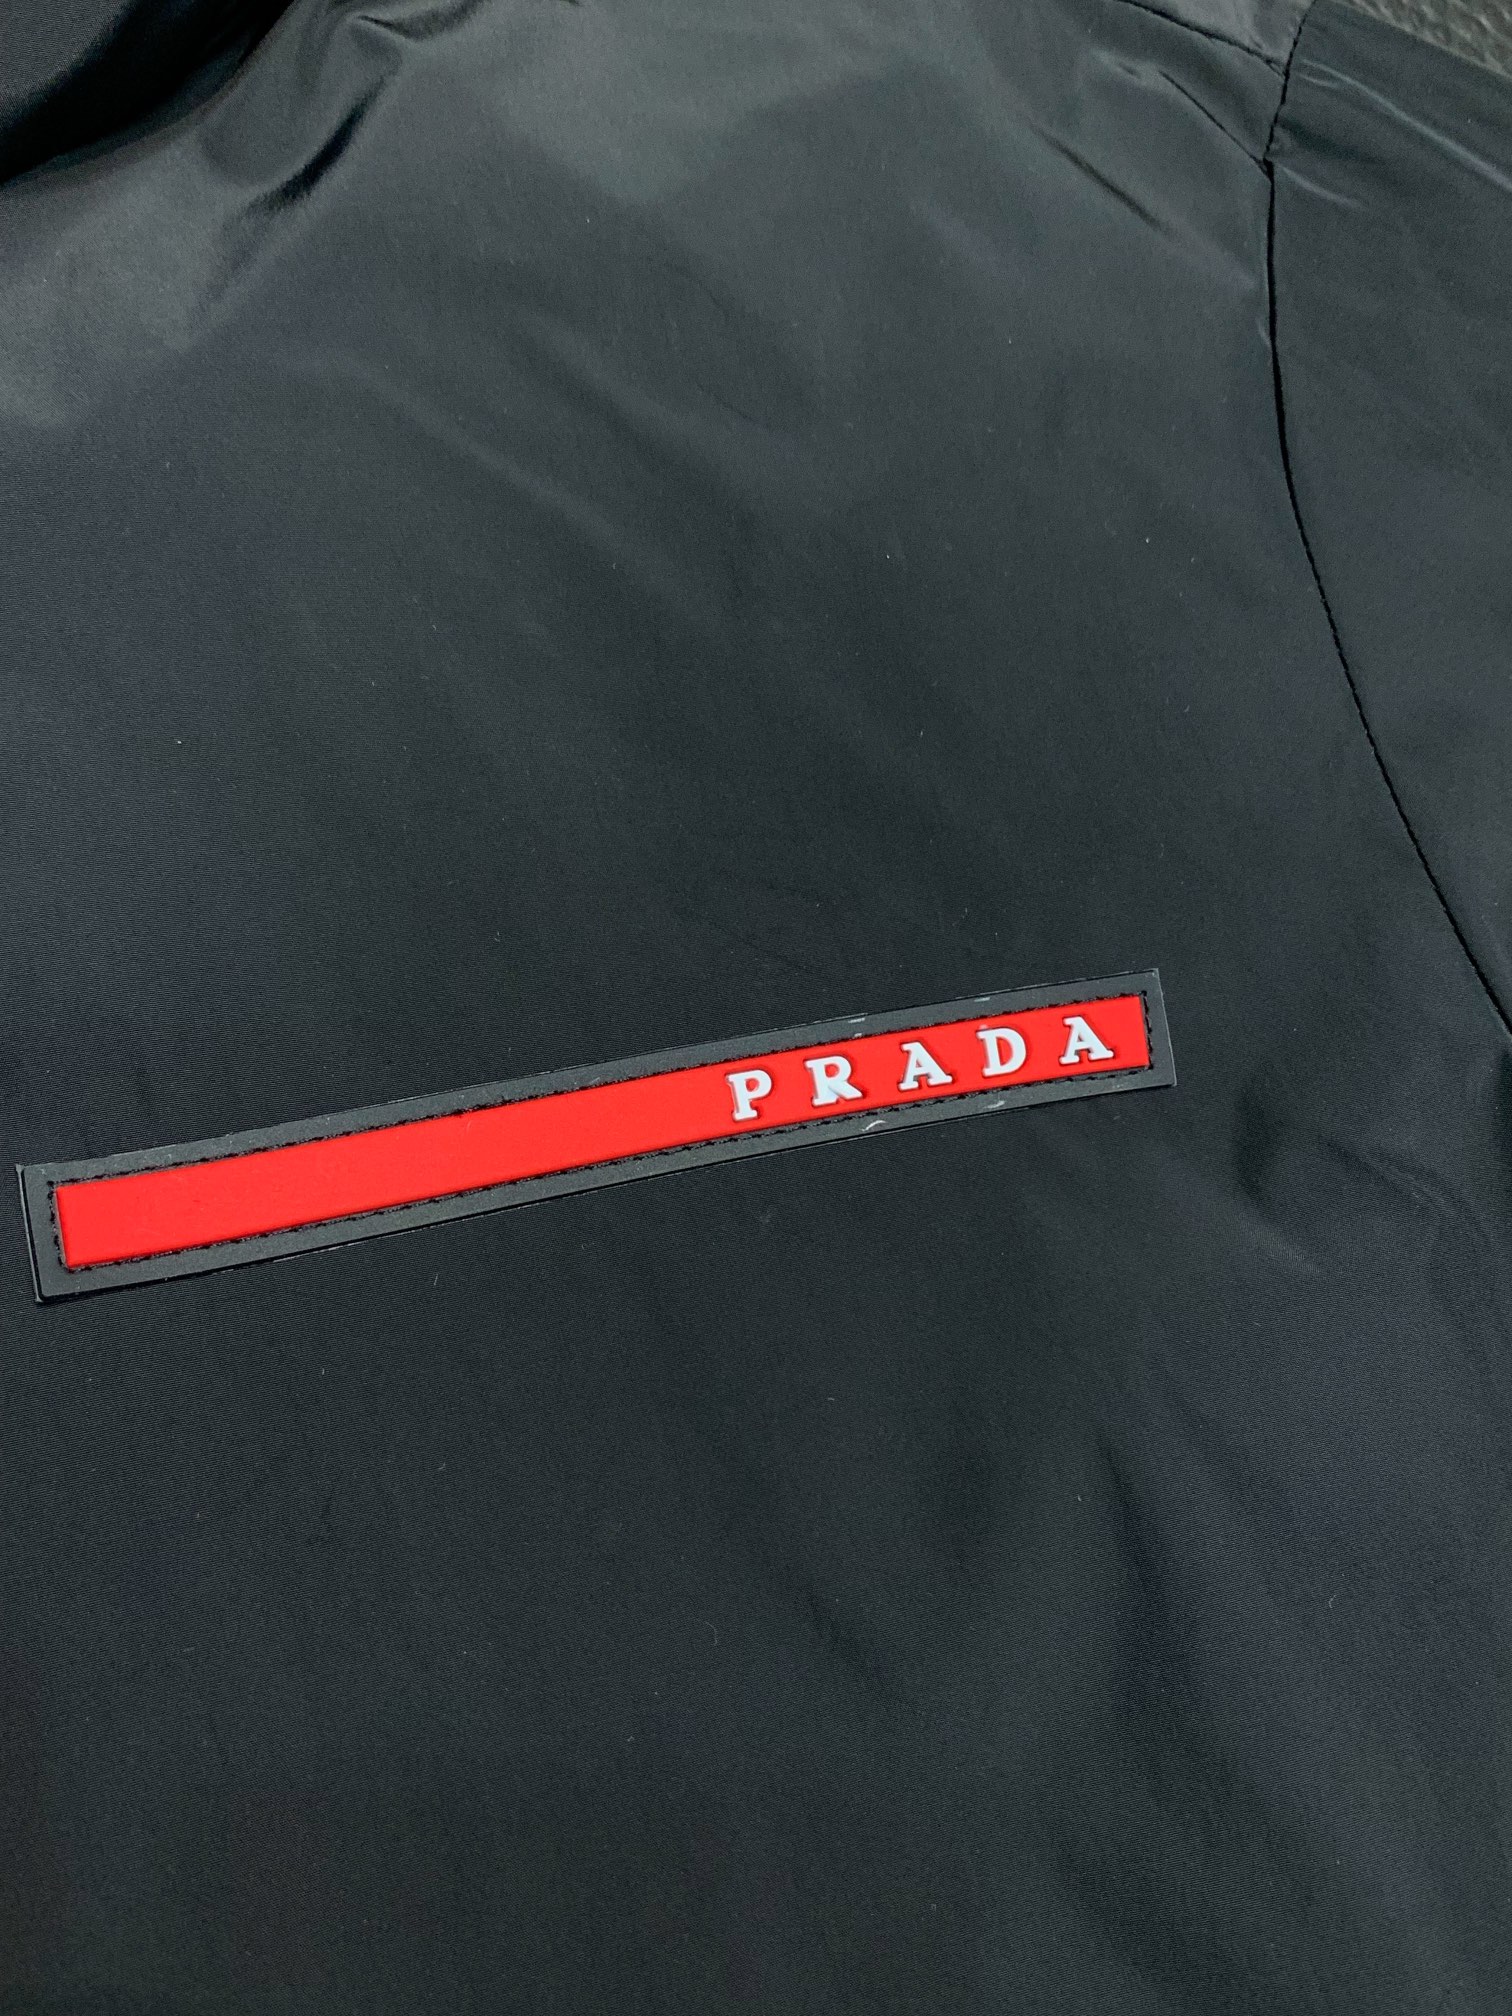 Prada普拉达独家专供最新春秋时尚连帽夹克经典设计感与颜值爆棚的外套品质更是无法挑剔品控可以直接入手不